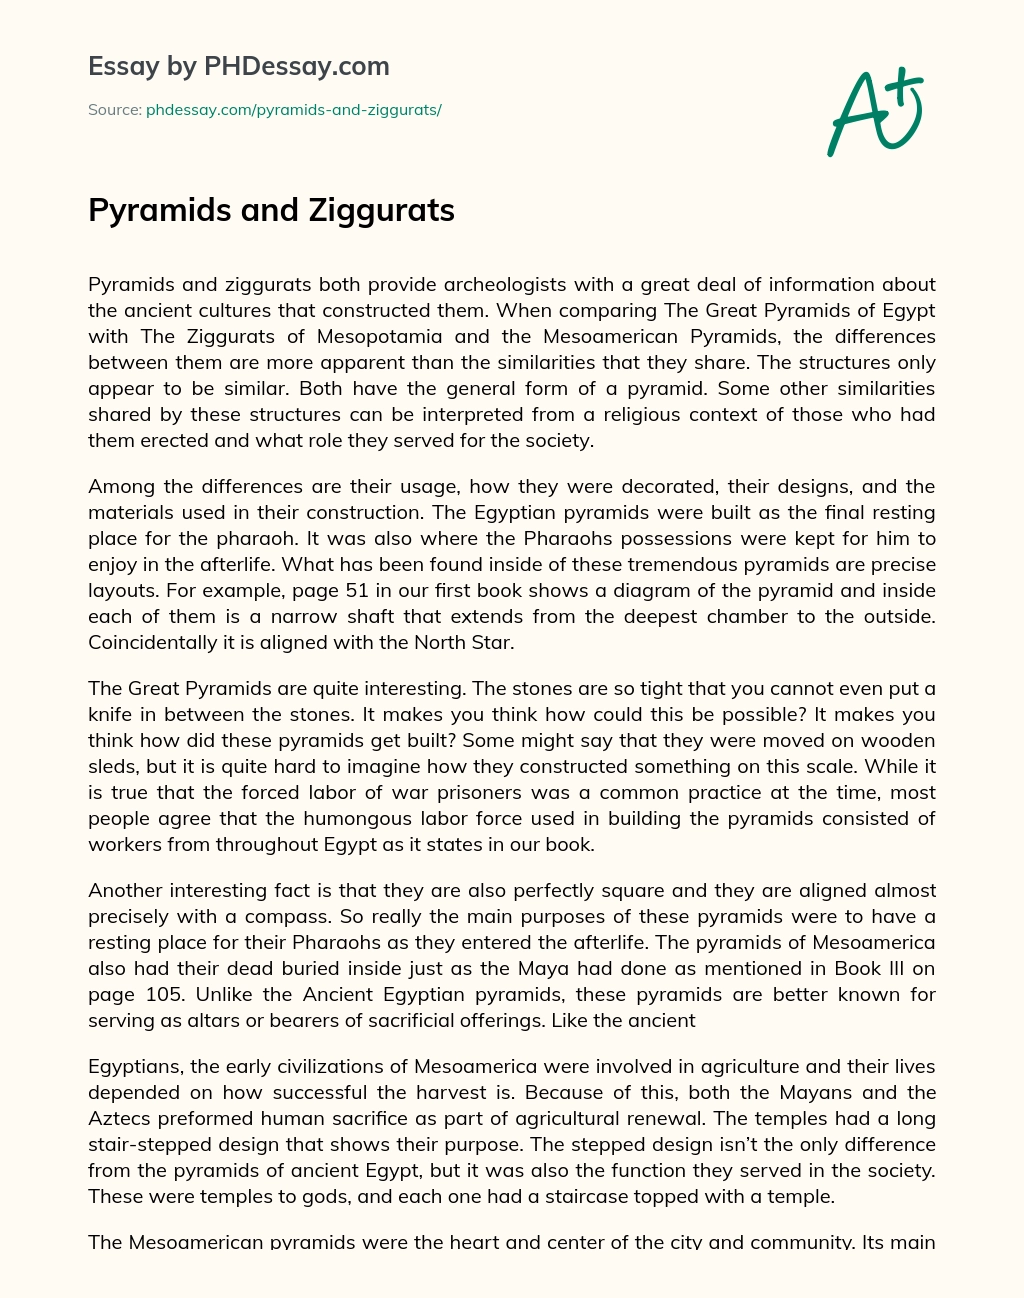 Pyramids and Ziggurats essay